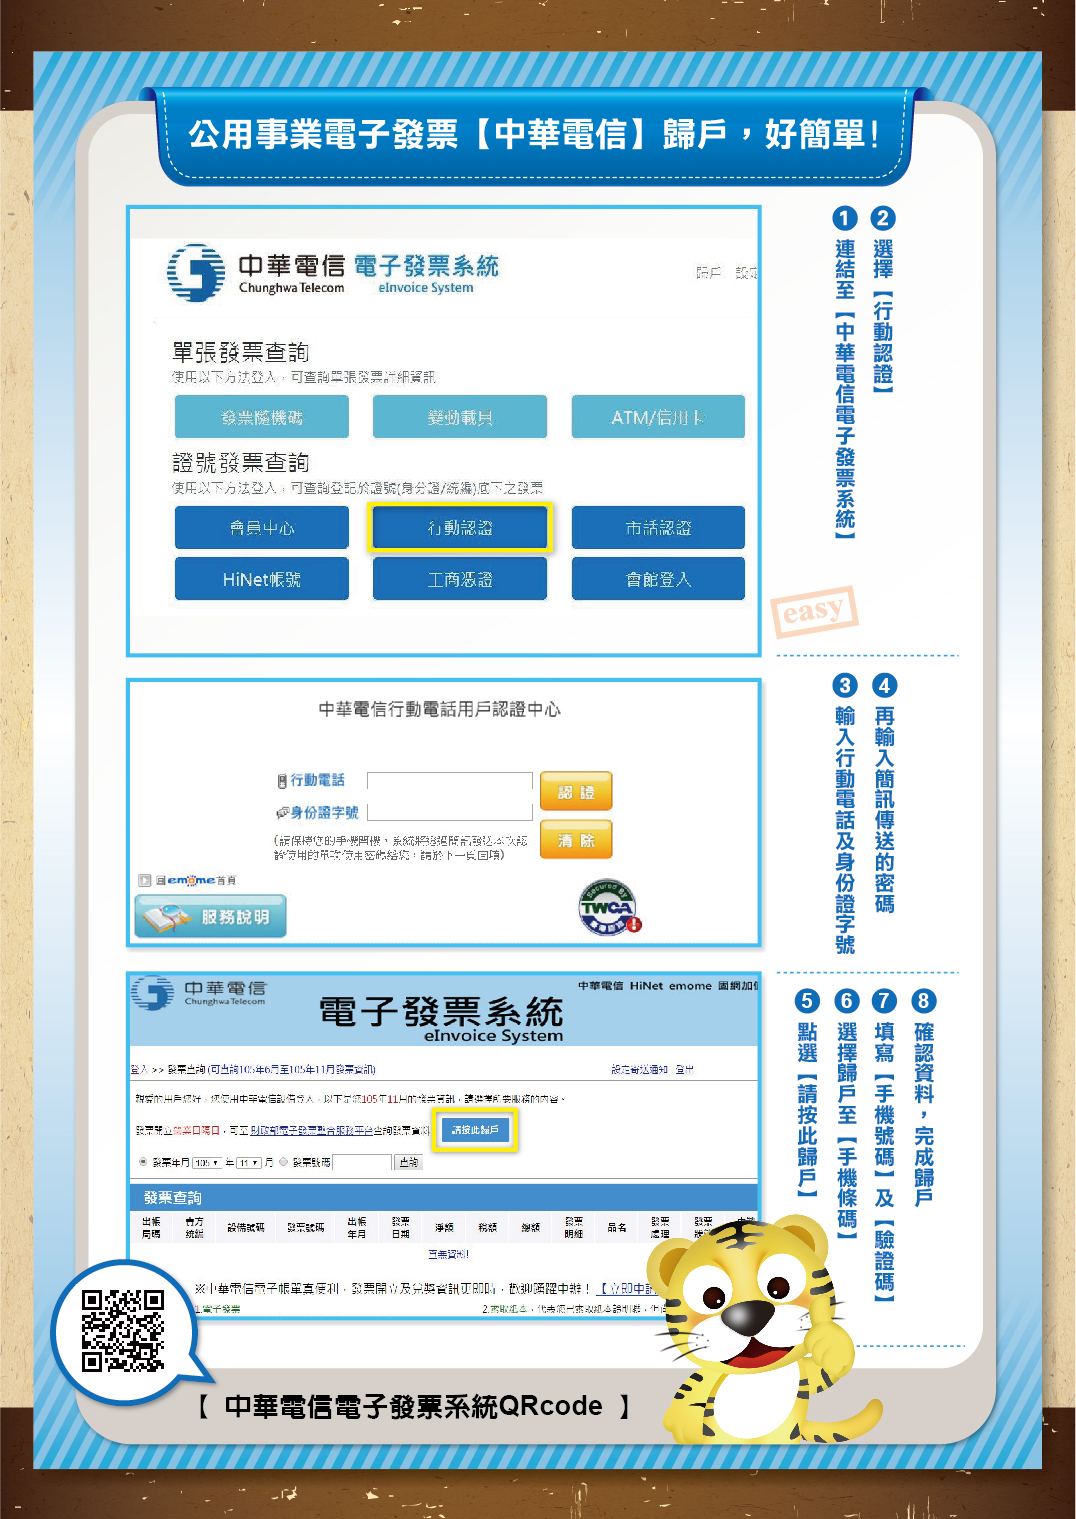 公用事業電子發票[中華電信]歸戶，好簡單！